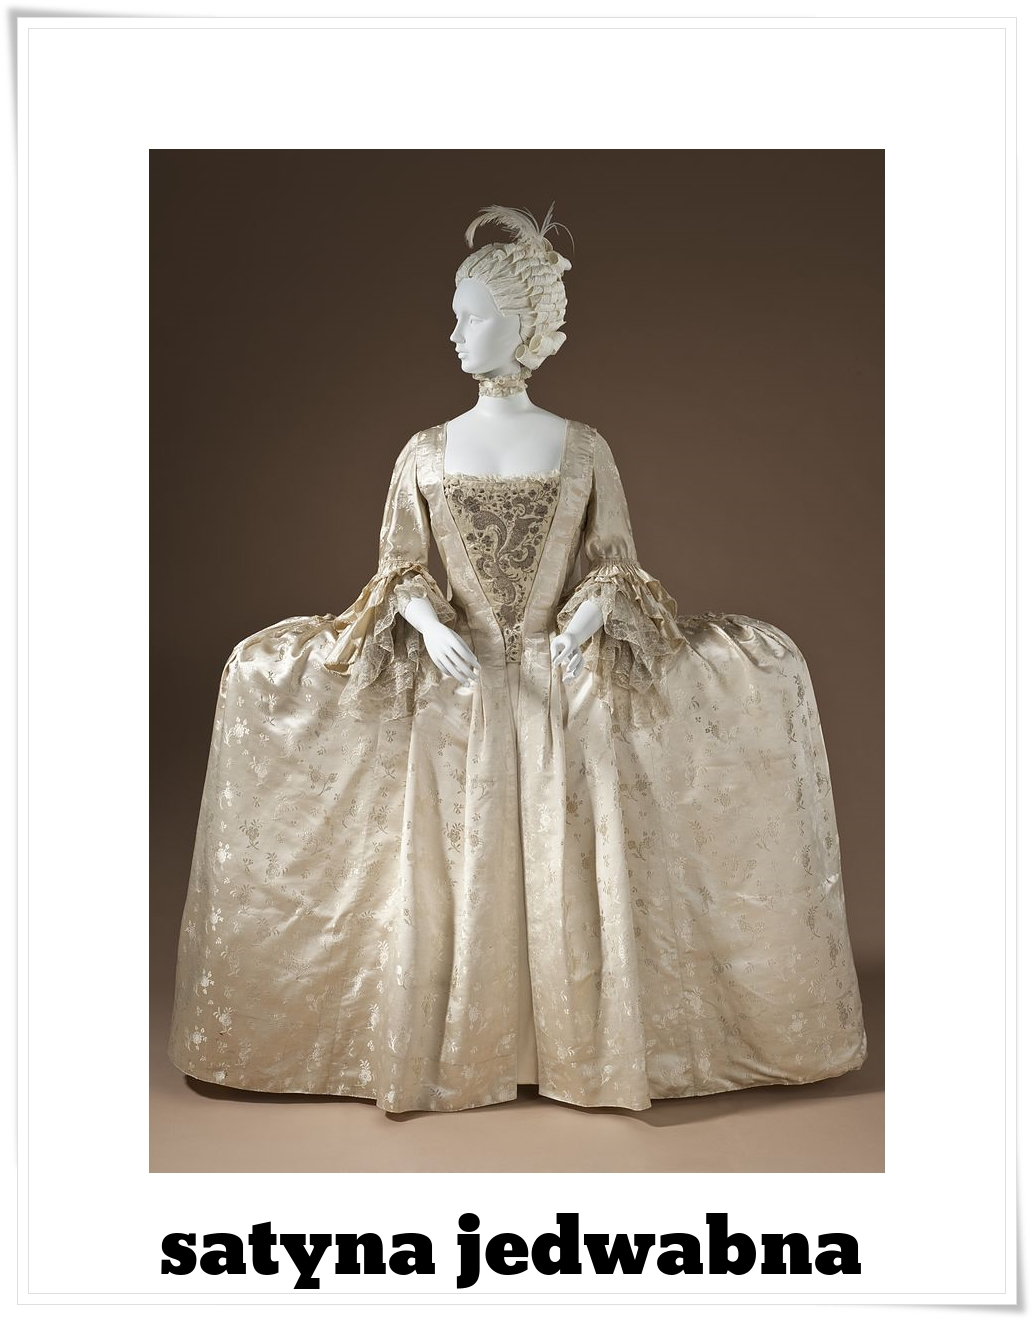 satyna jedwabna - suknia w stylu francuskim - 1765